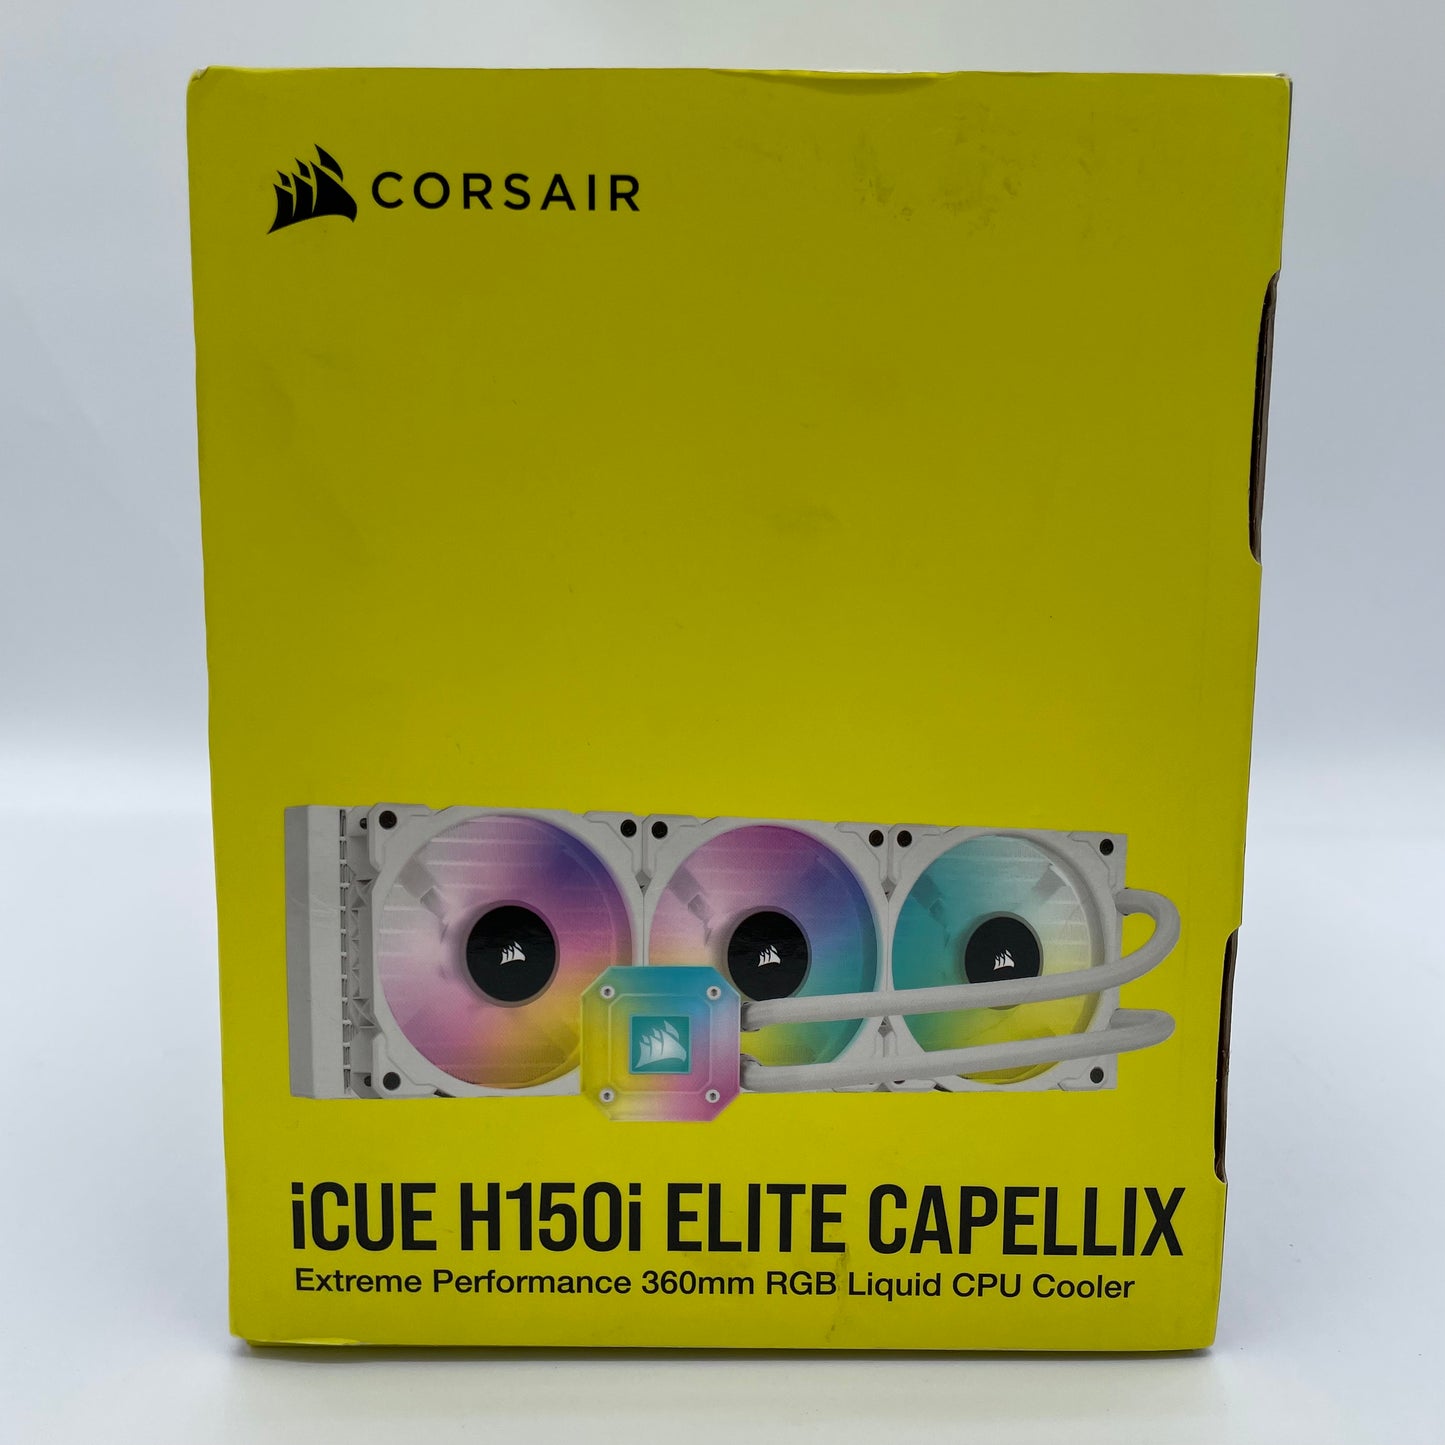 New Corsair iCUE H150i ELITE CAPPELLIX Liquid CPU Cooler